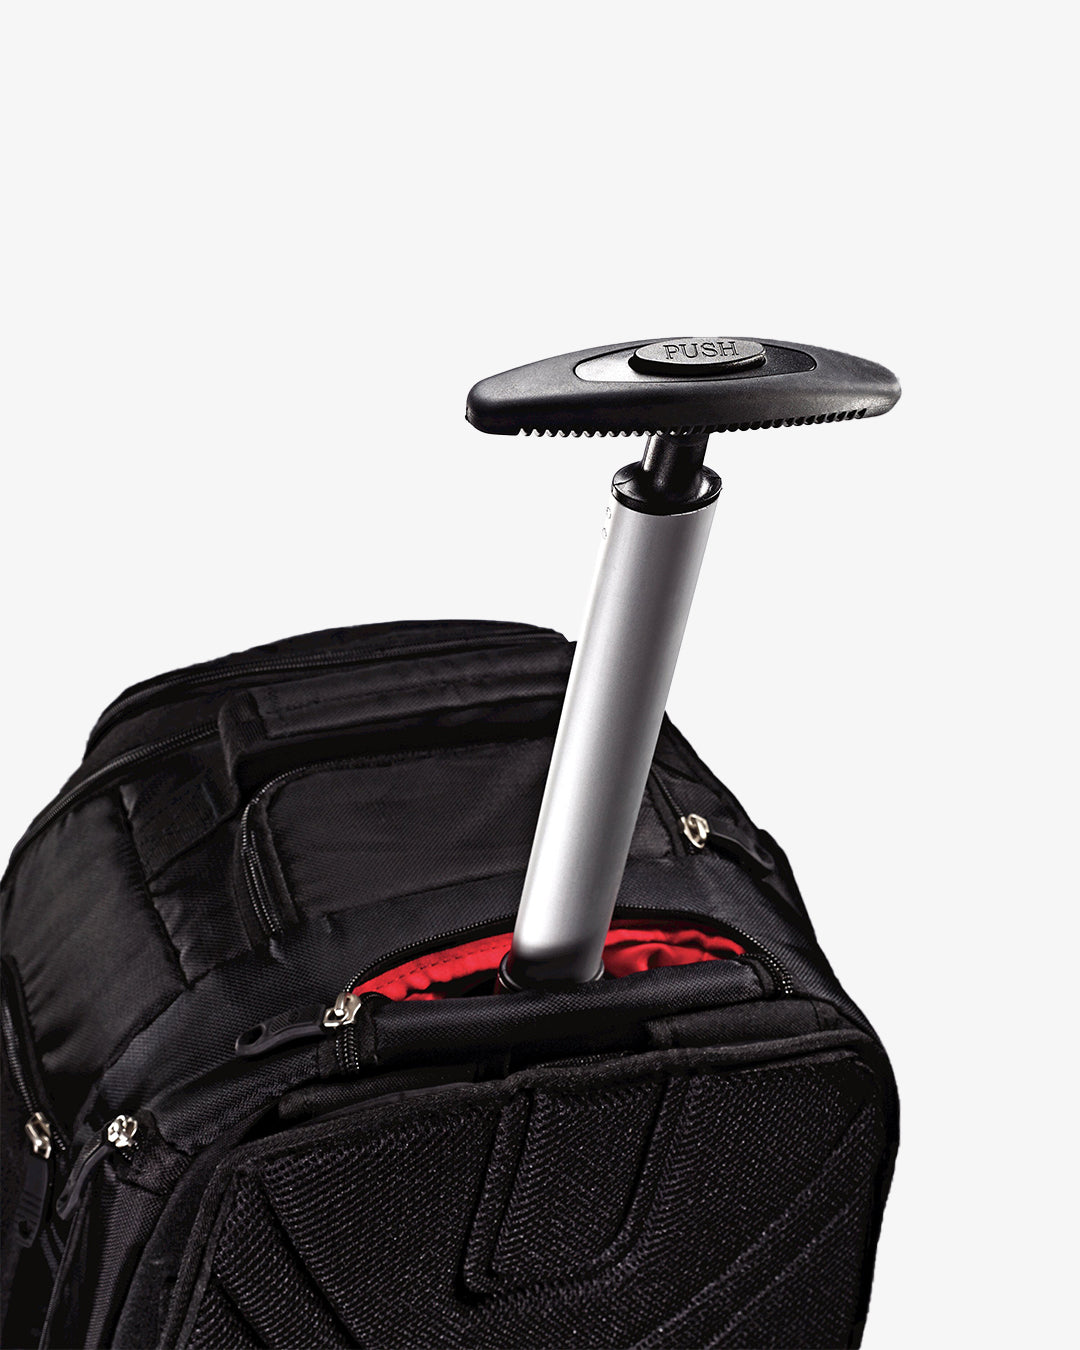 Samsonite MVS Spinner 20" Backpack